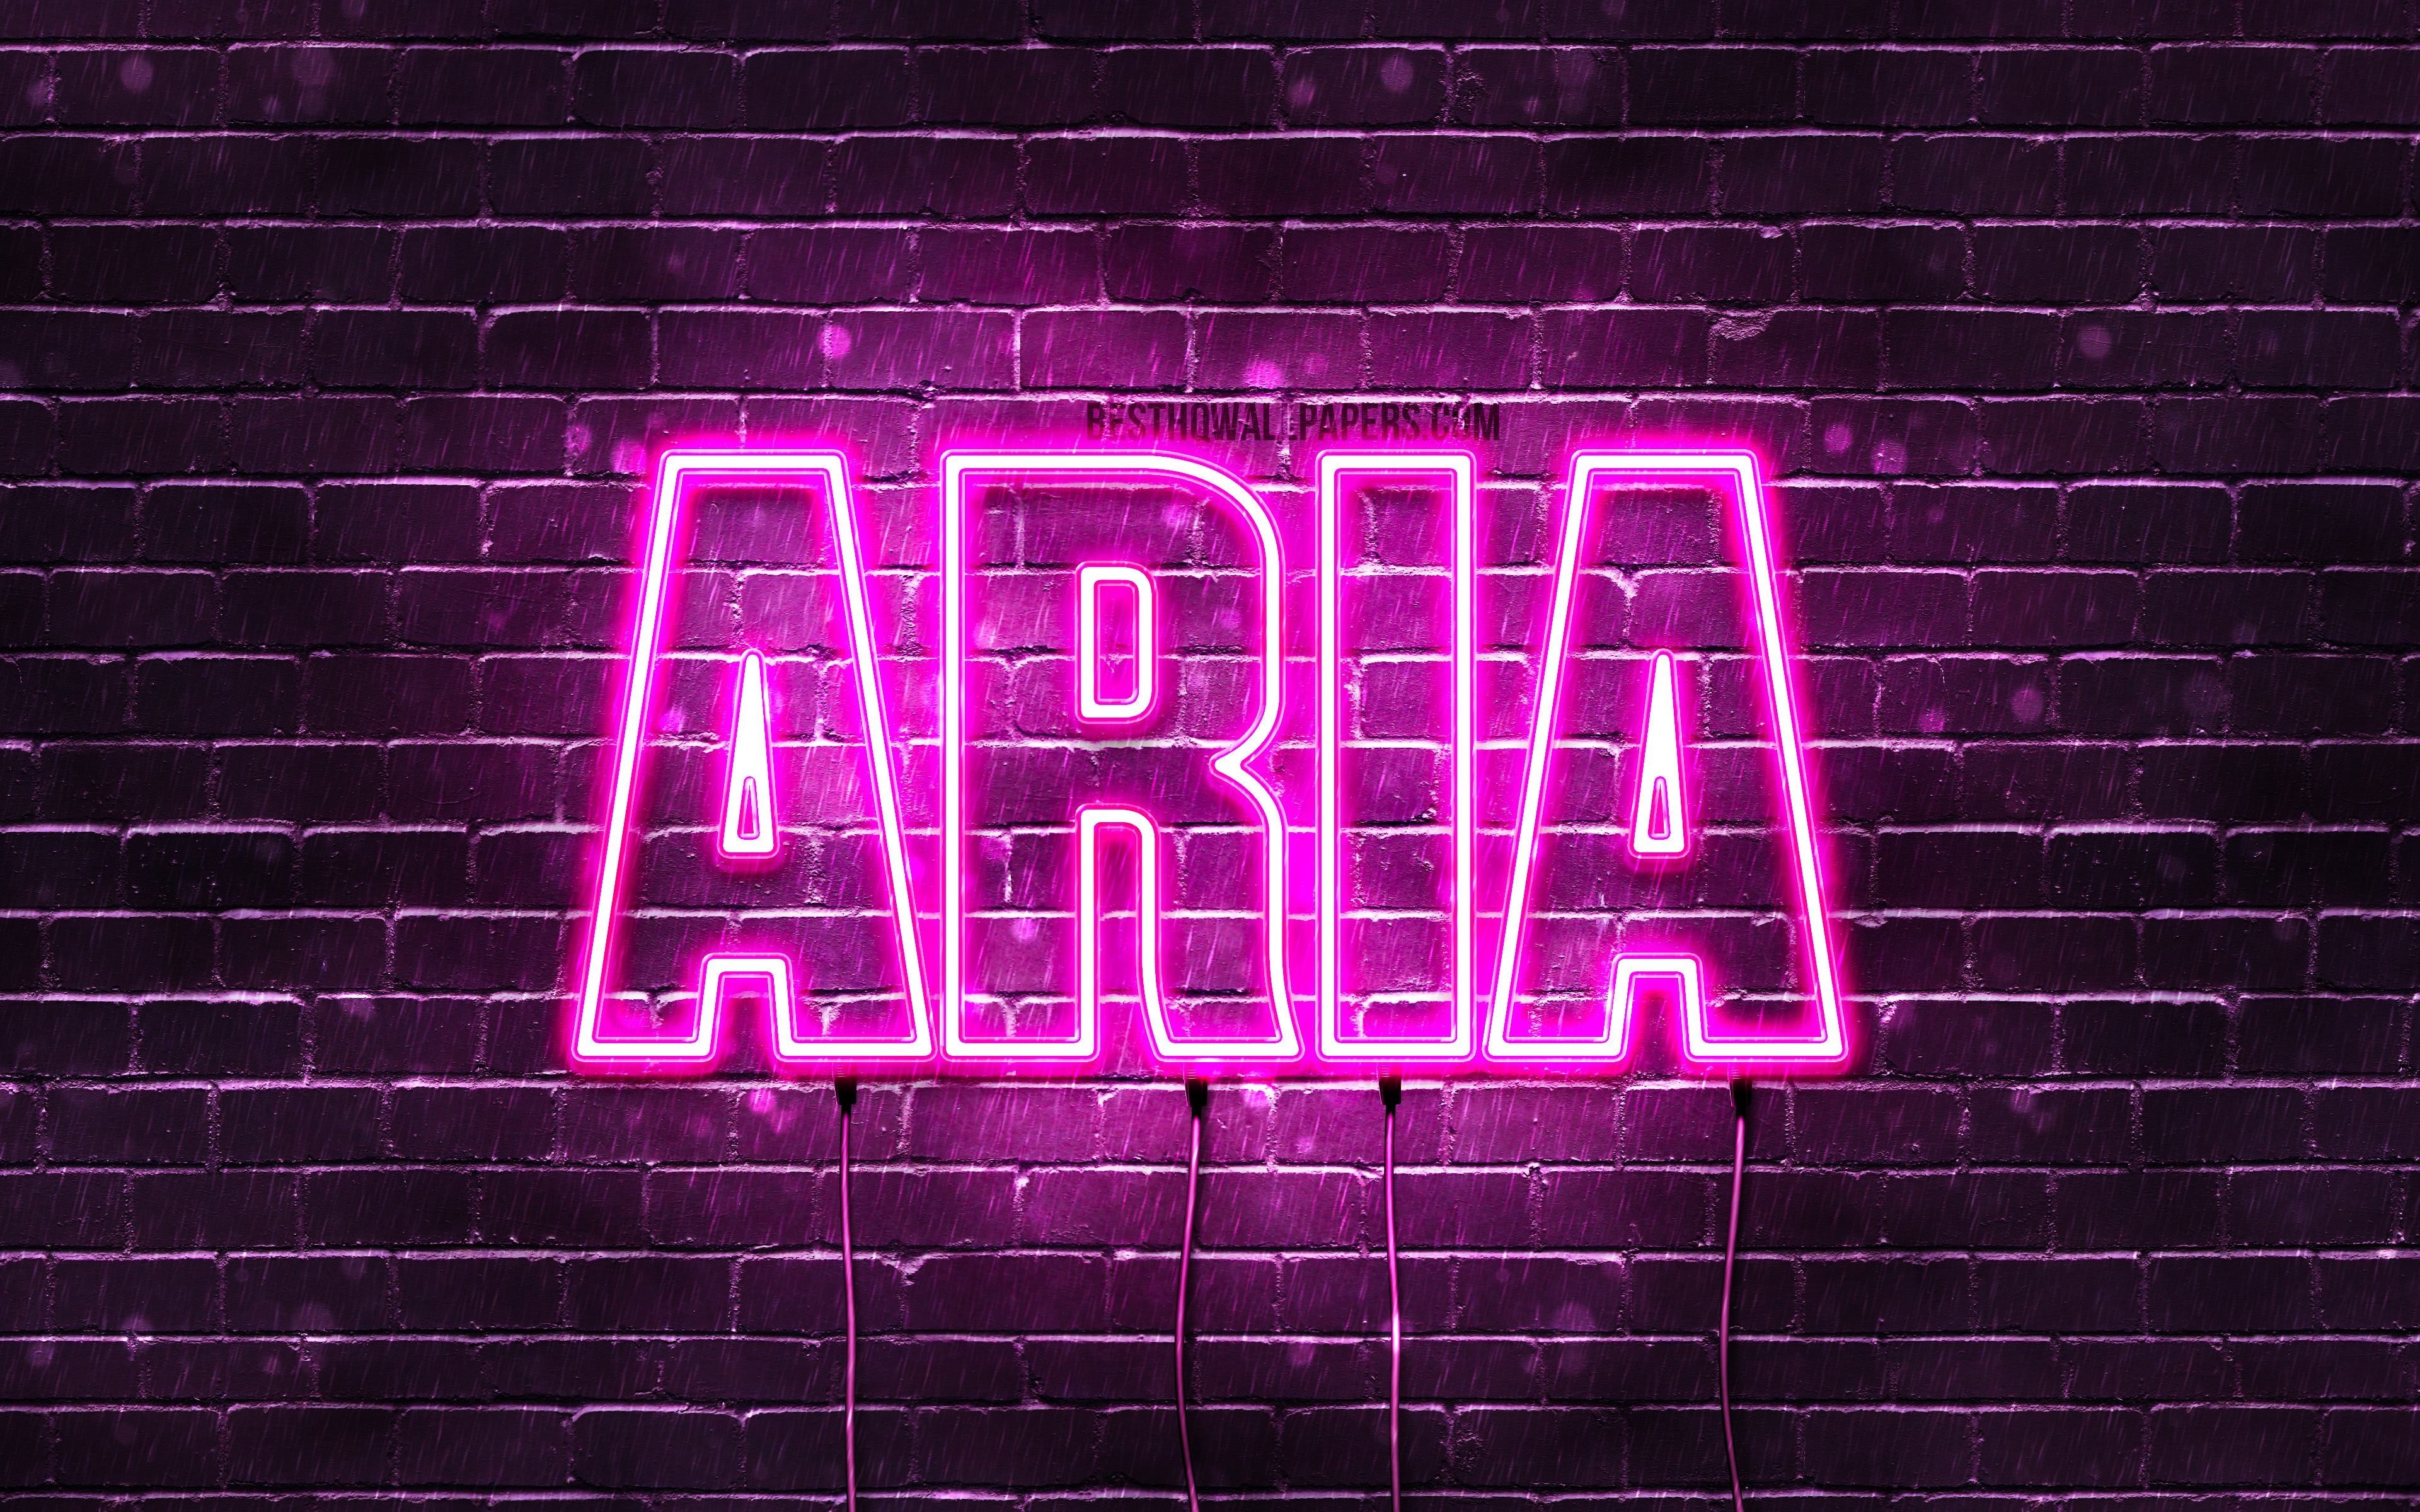 ダウンロード画像 空気 4k 壁紙名 女性の名前 アリア名 紫色のネオン テキストの水平 写真のアリア名 画面の解像度 3840x2400 壁紙デスクトップ上